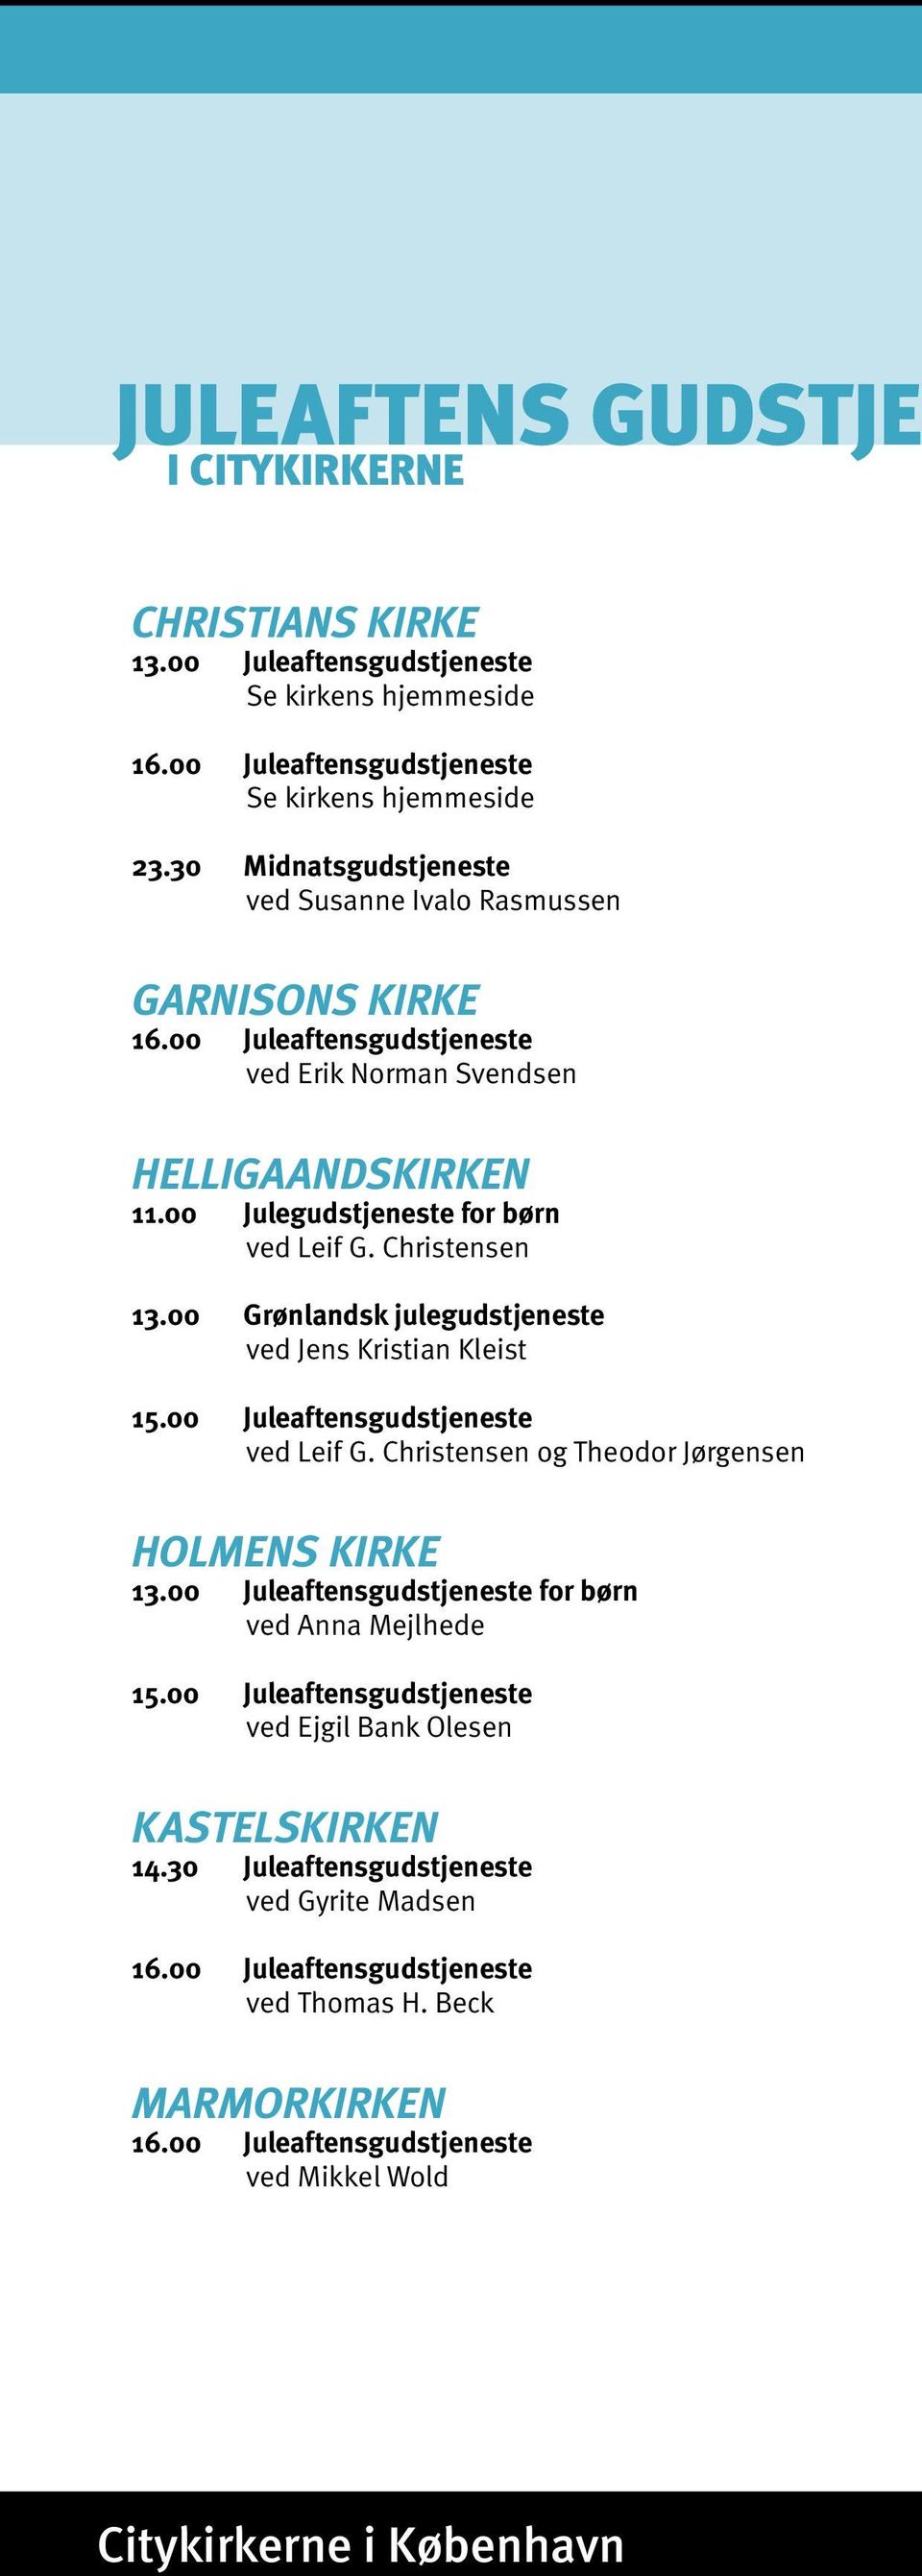 00 Grønlandsk julegudstjeneste ved Jens Kristian Kleist 15.00 Juleaftensgudstjeneste ved Leif G. Christensen og Theodor Jørgensen HOLMENS KIRKE 13.